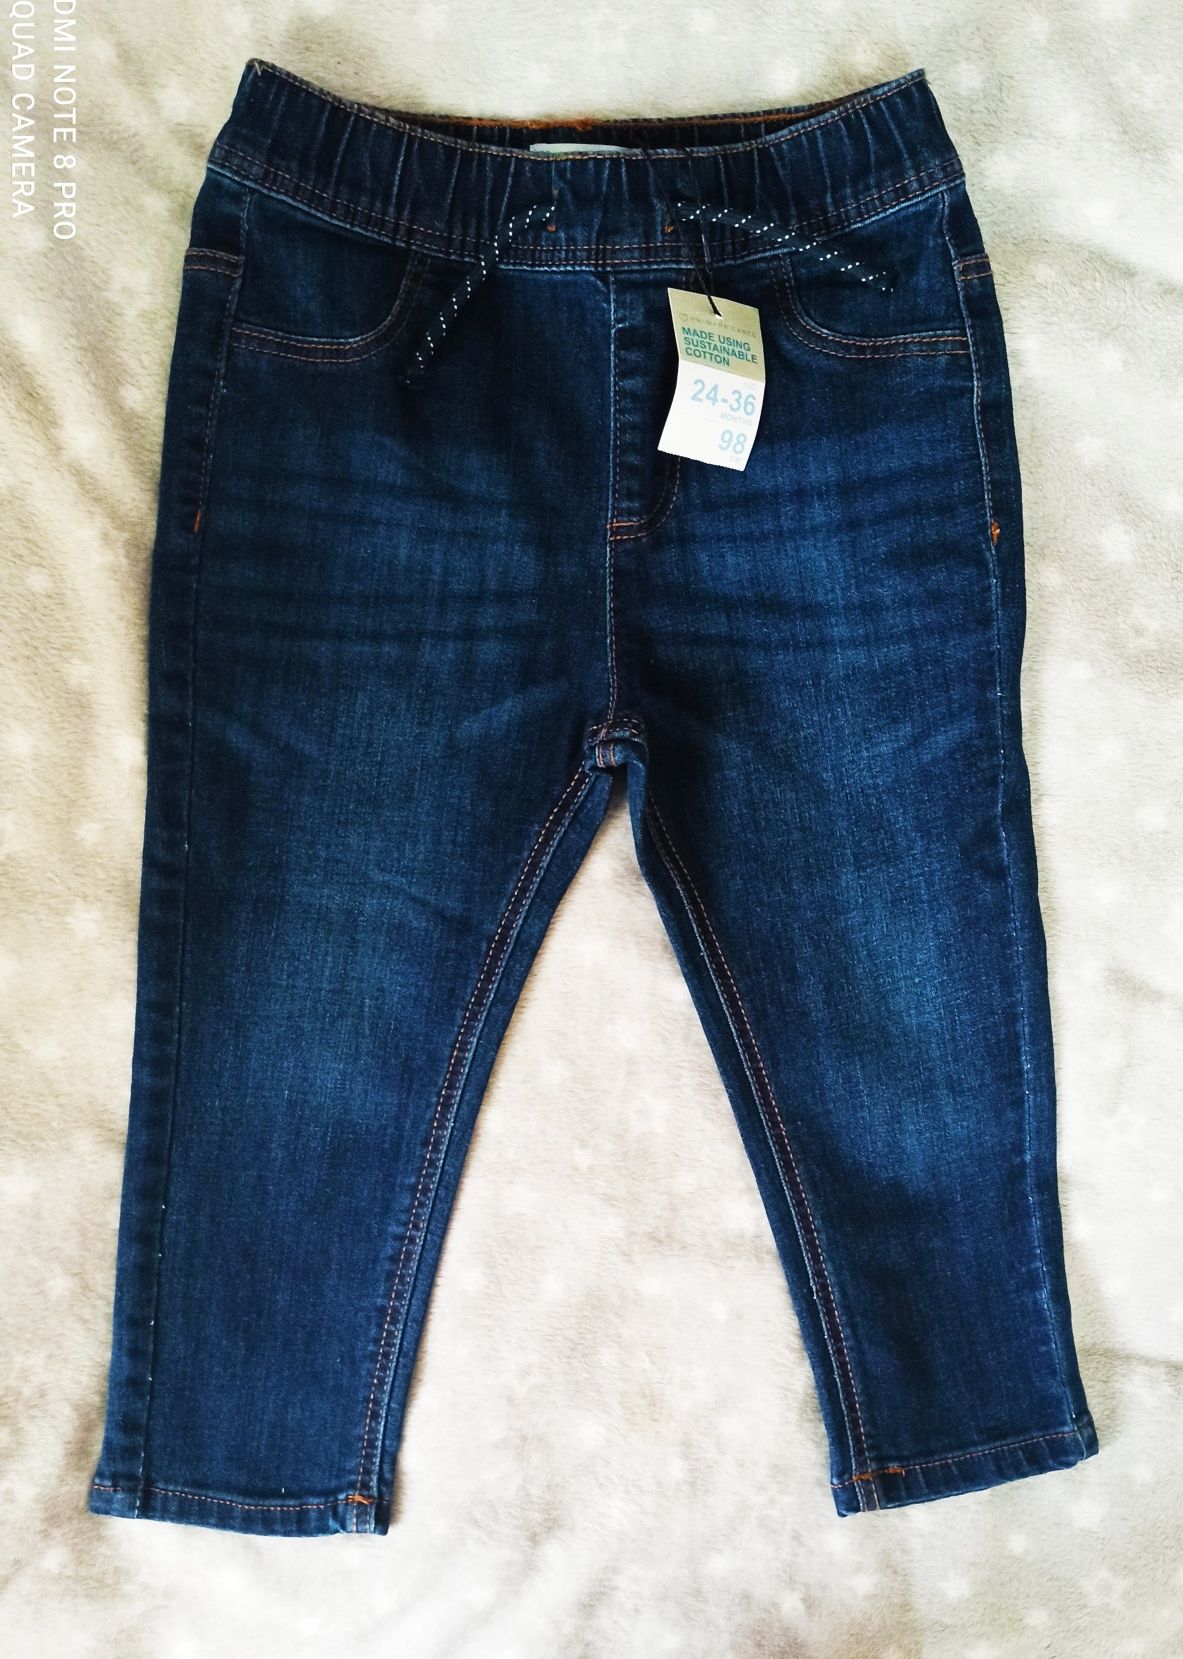 Spodnie jeansowe dla chlopca 98 Primark